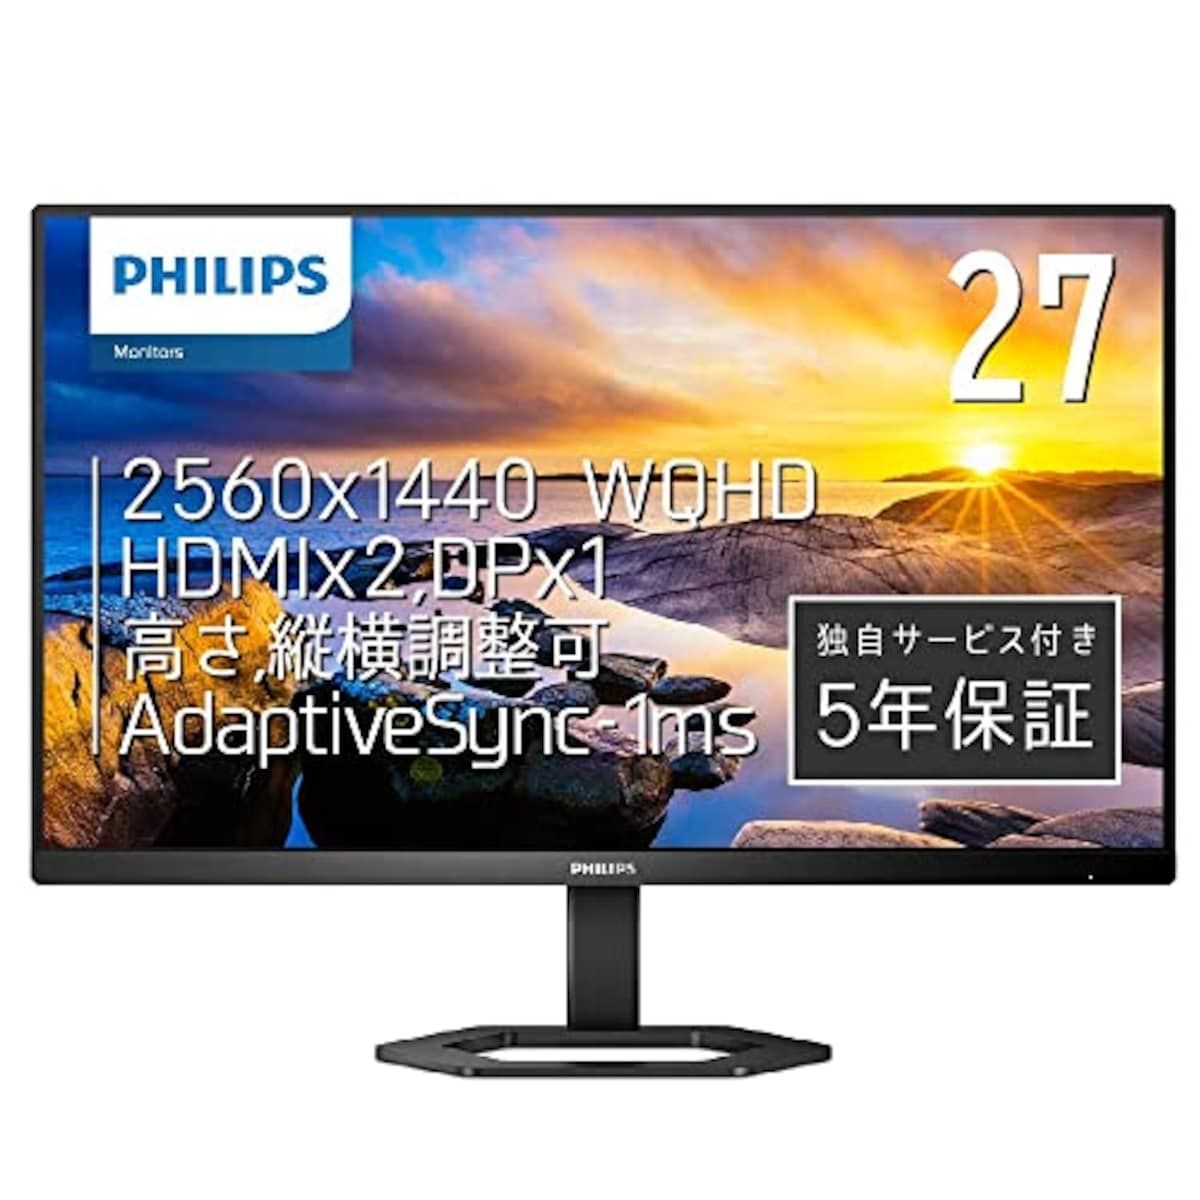 Philips(フィリップス)のPHILIPS 液晶ディスプレイ PCモニター 27E1N5500E/11 (27インチ/5年保証/WQHD